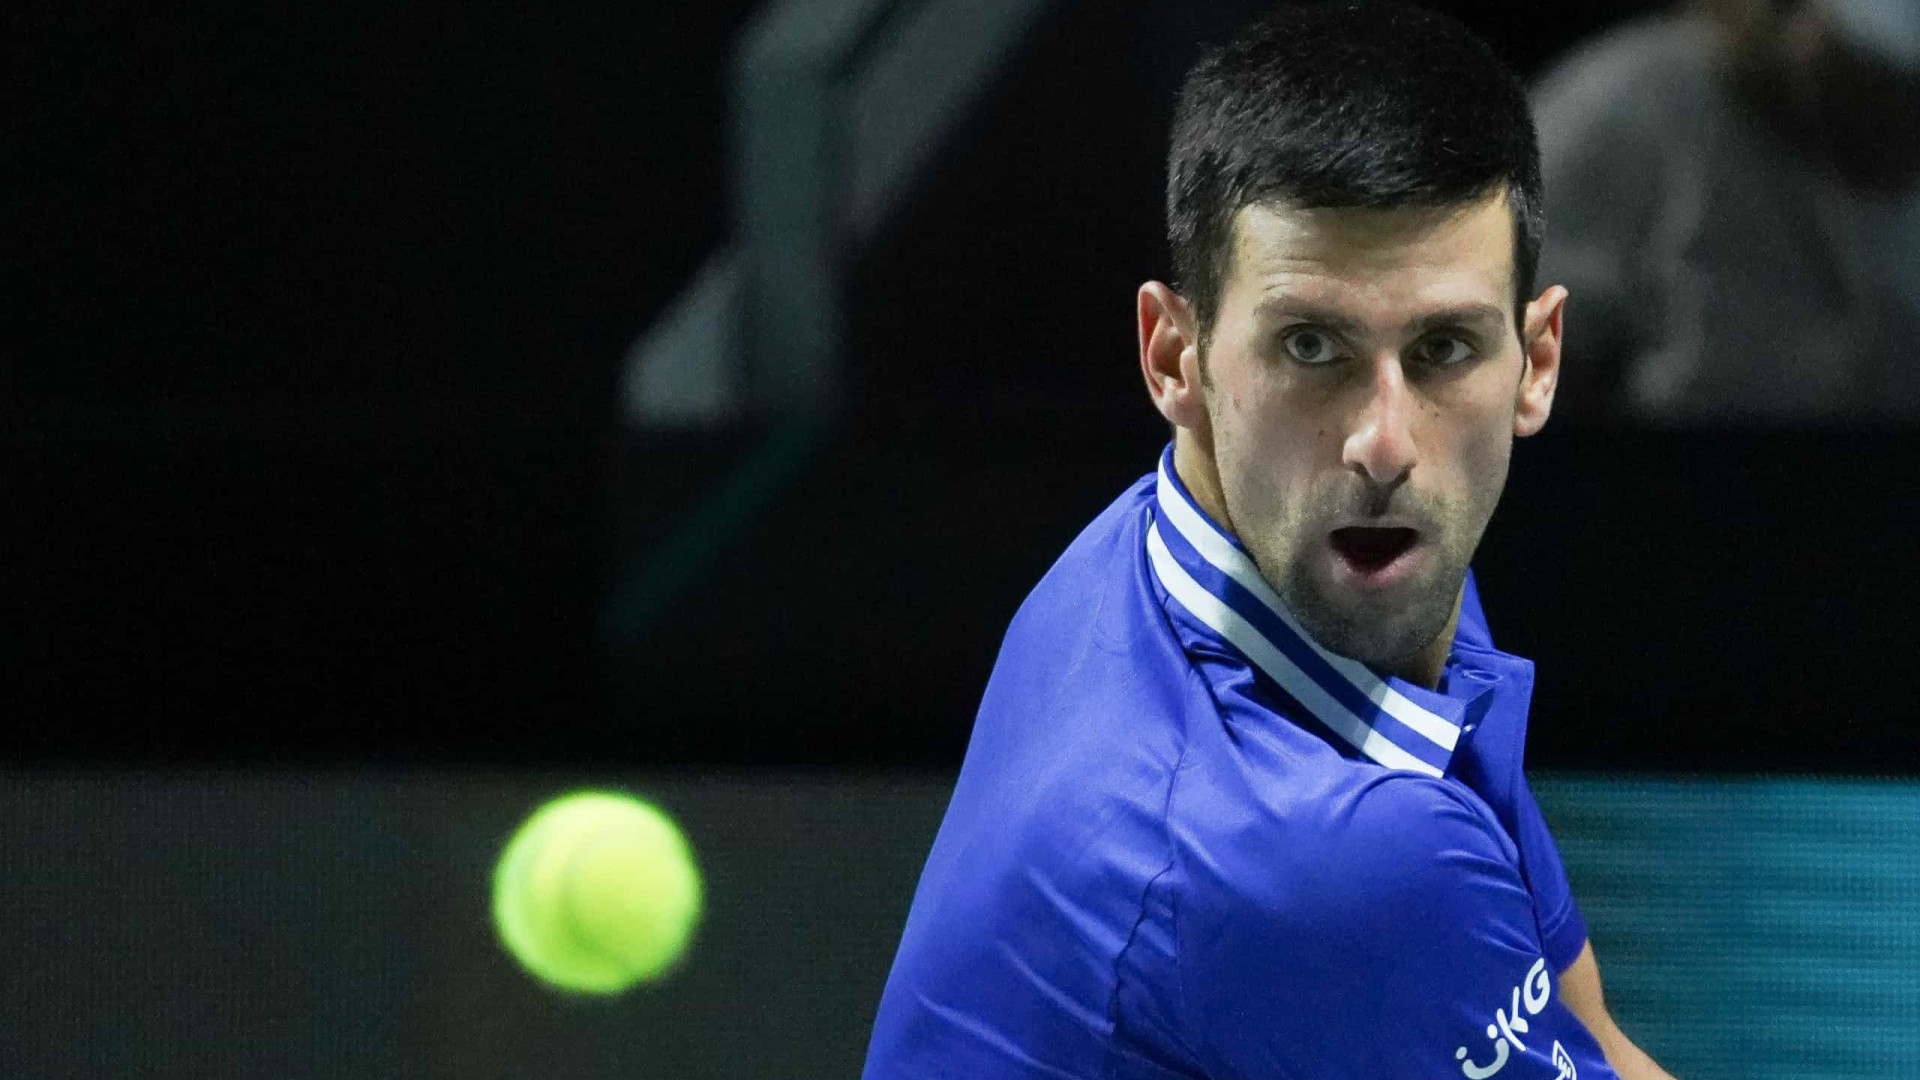 Após polêmica na Austrália, Novak Djokovic começa temporada no ATP 500 de Dubai